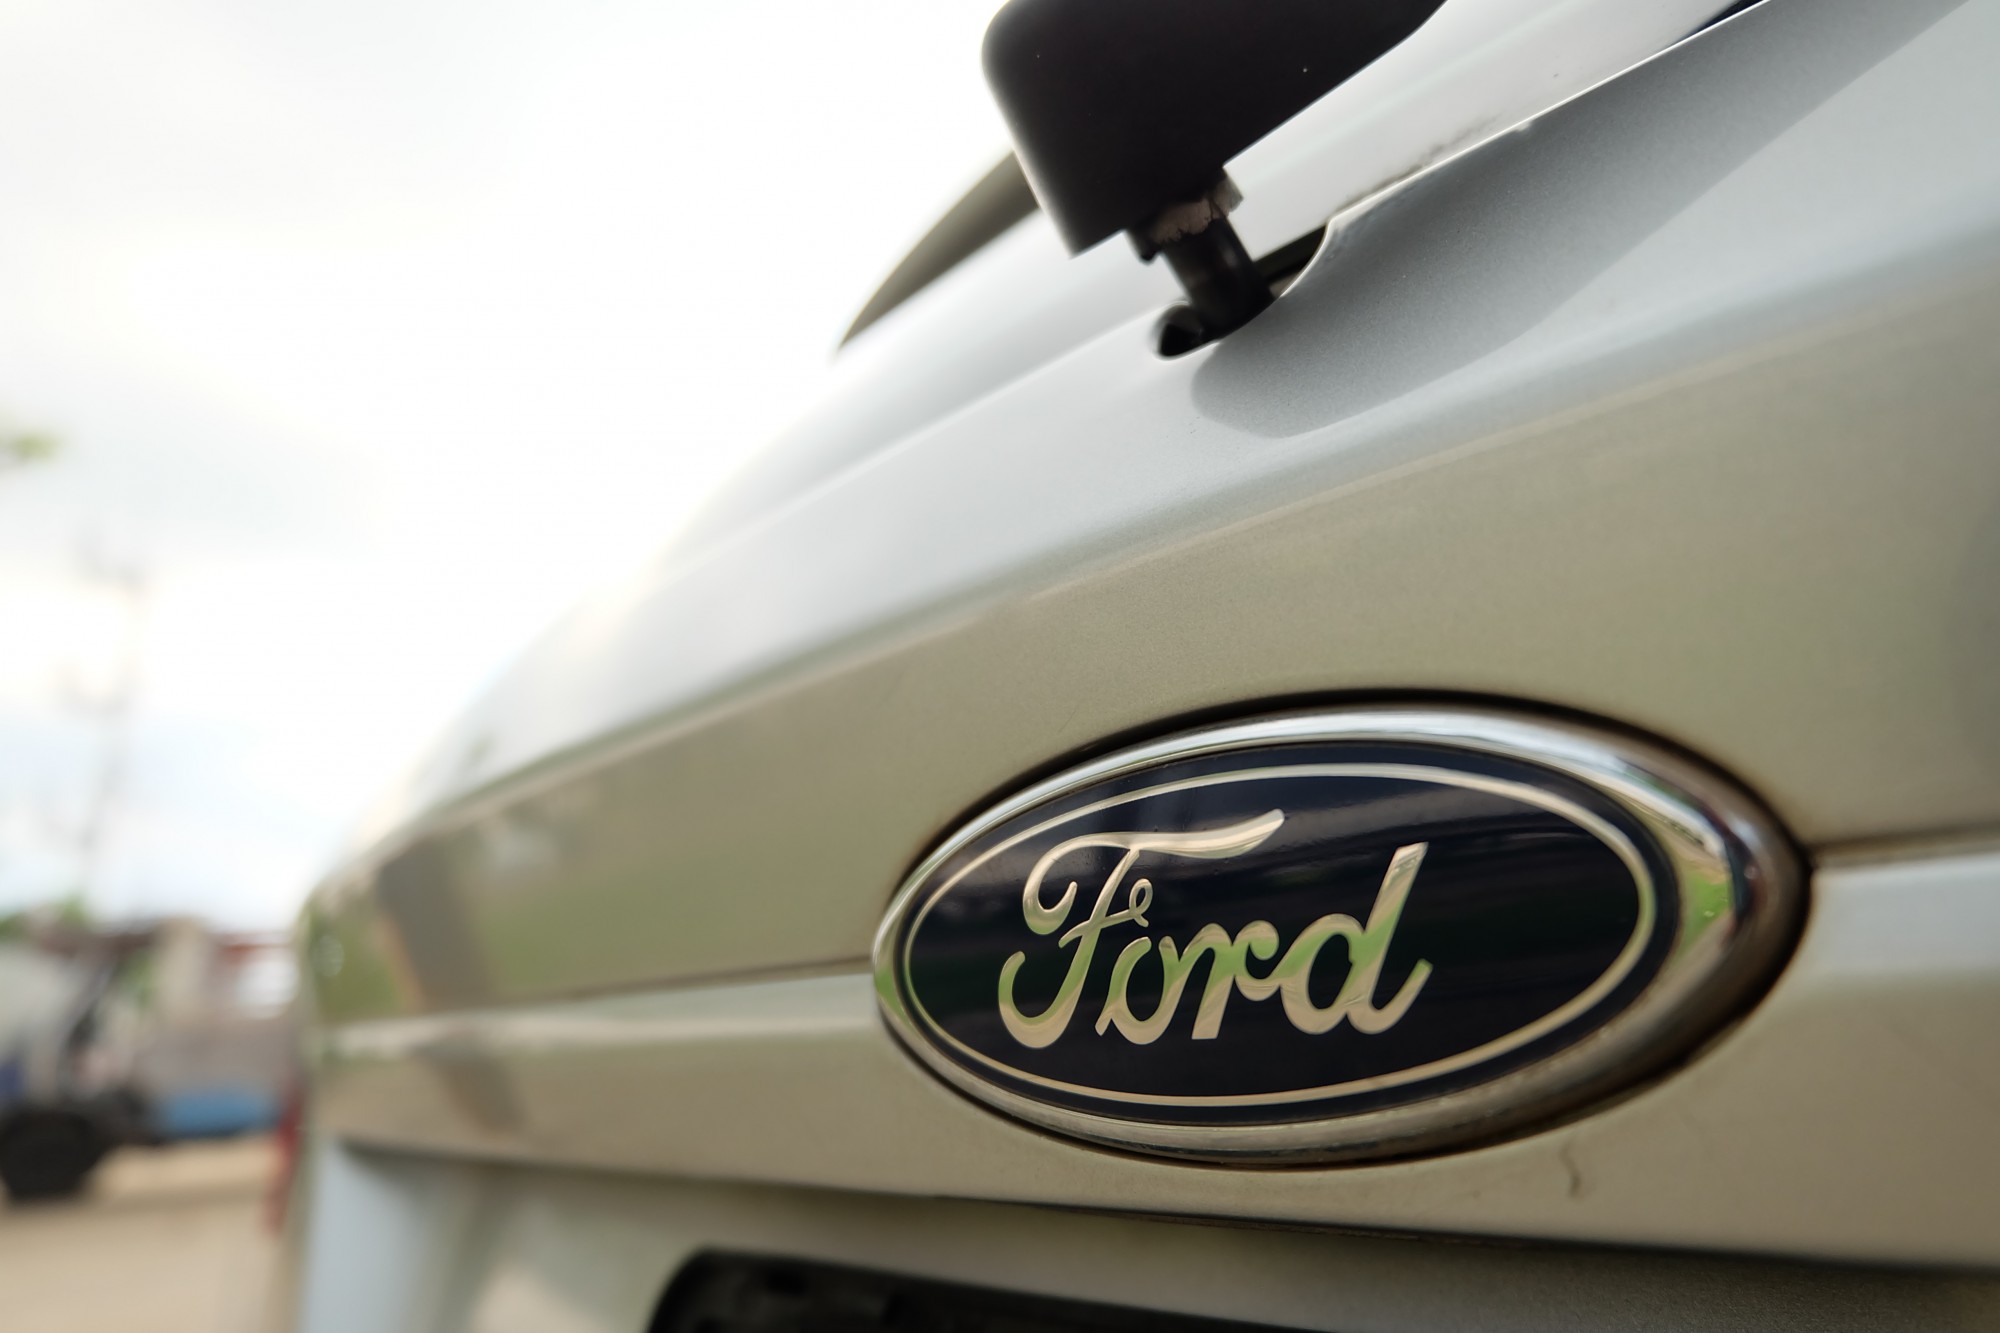 2013 Ford Fiesta สีเทา